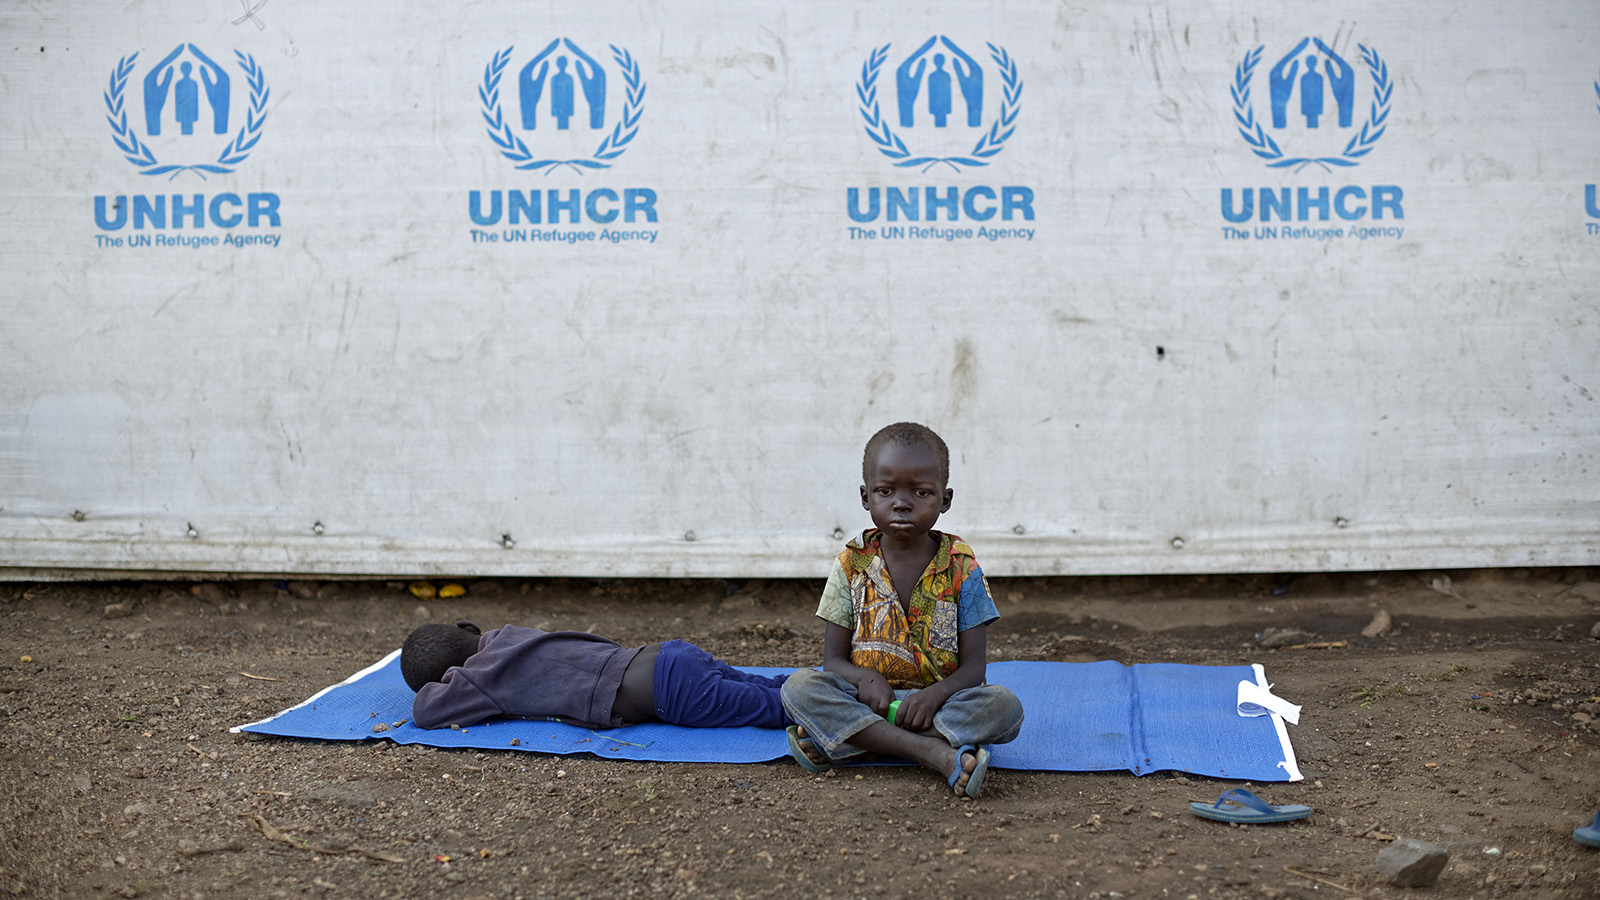 ילדים דרום סודנים ממתינים ליד אוהל במחנה פליטים (צילום: AP Photo/Ben Curtis)